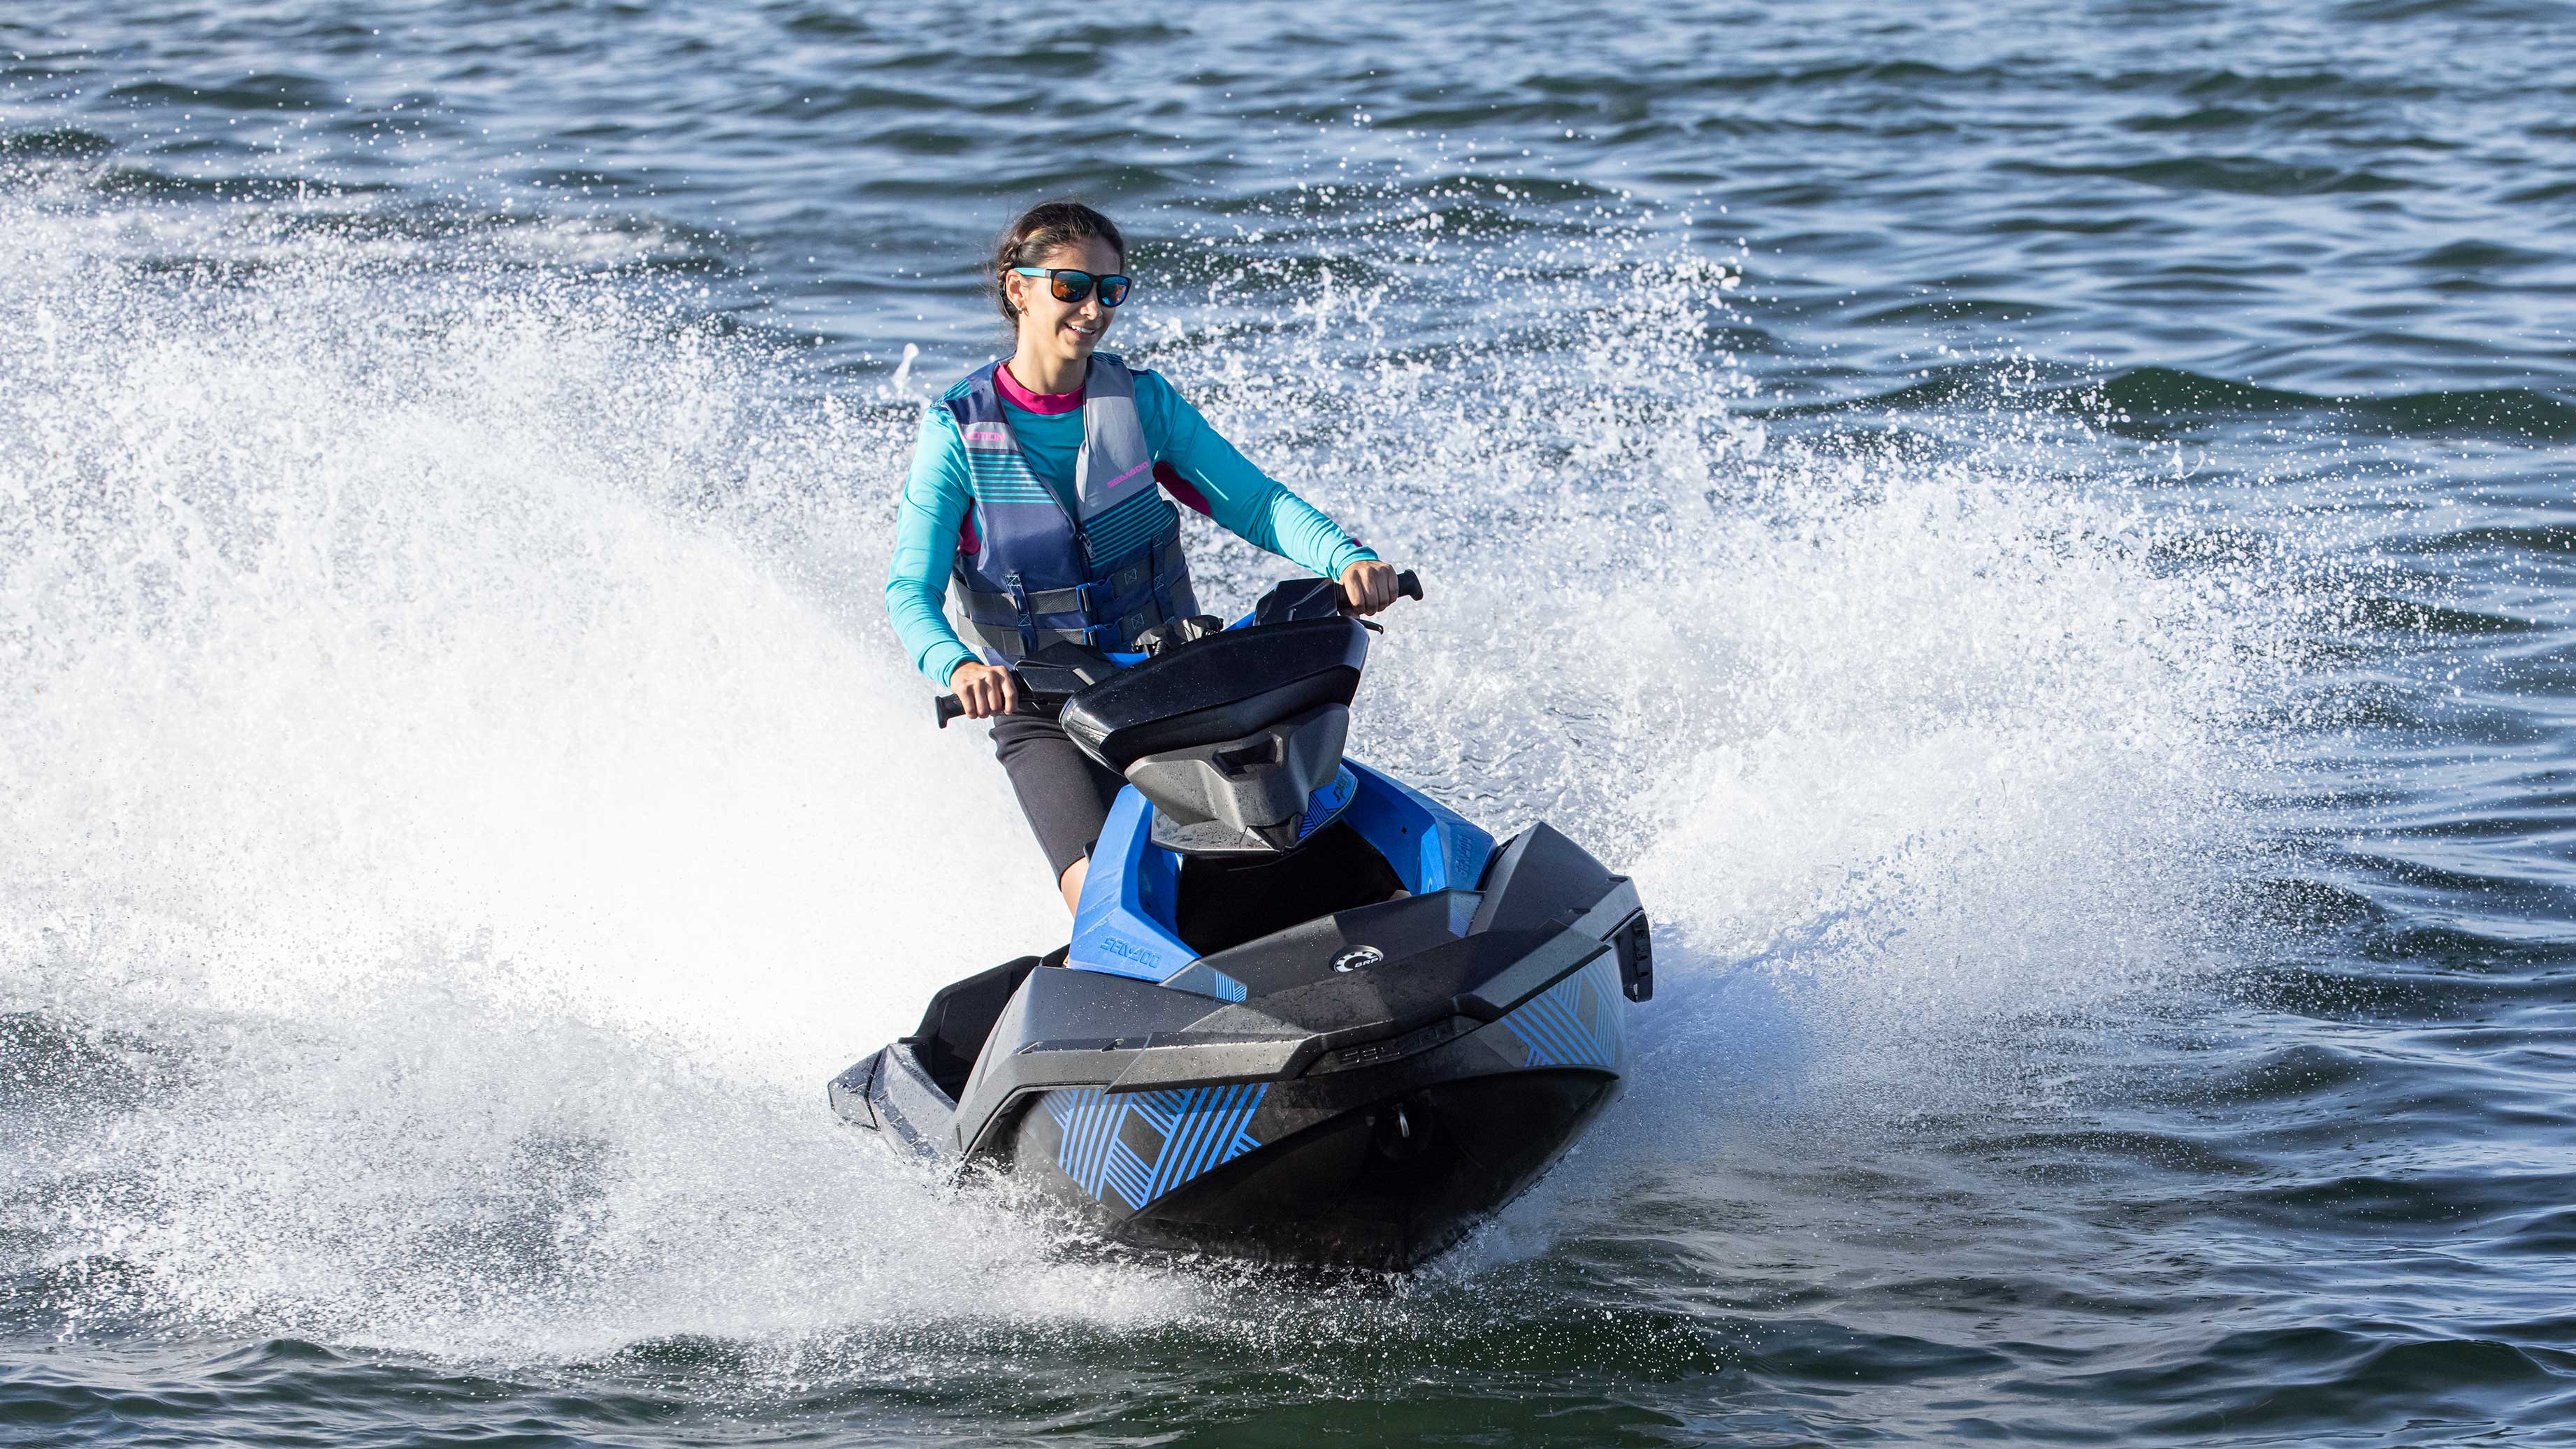 Женщина едет на Sea-Doo Spark Trixx синего цвета